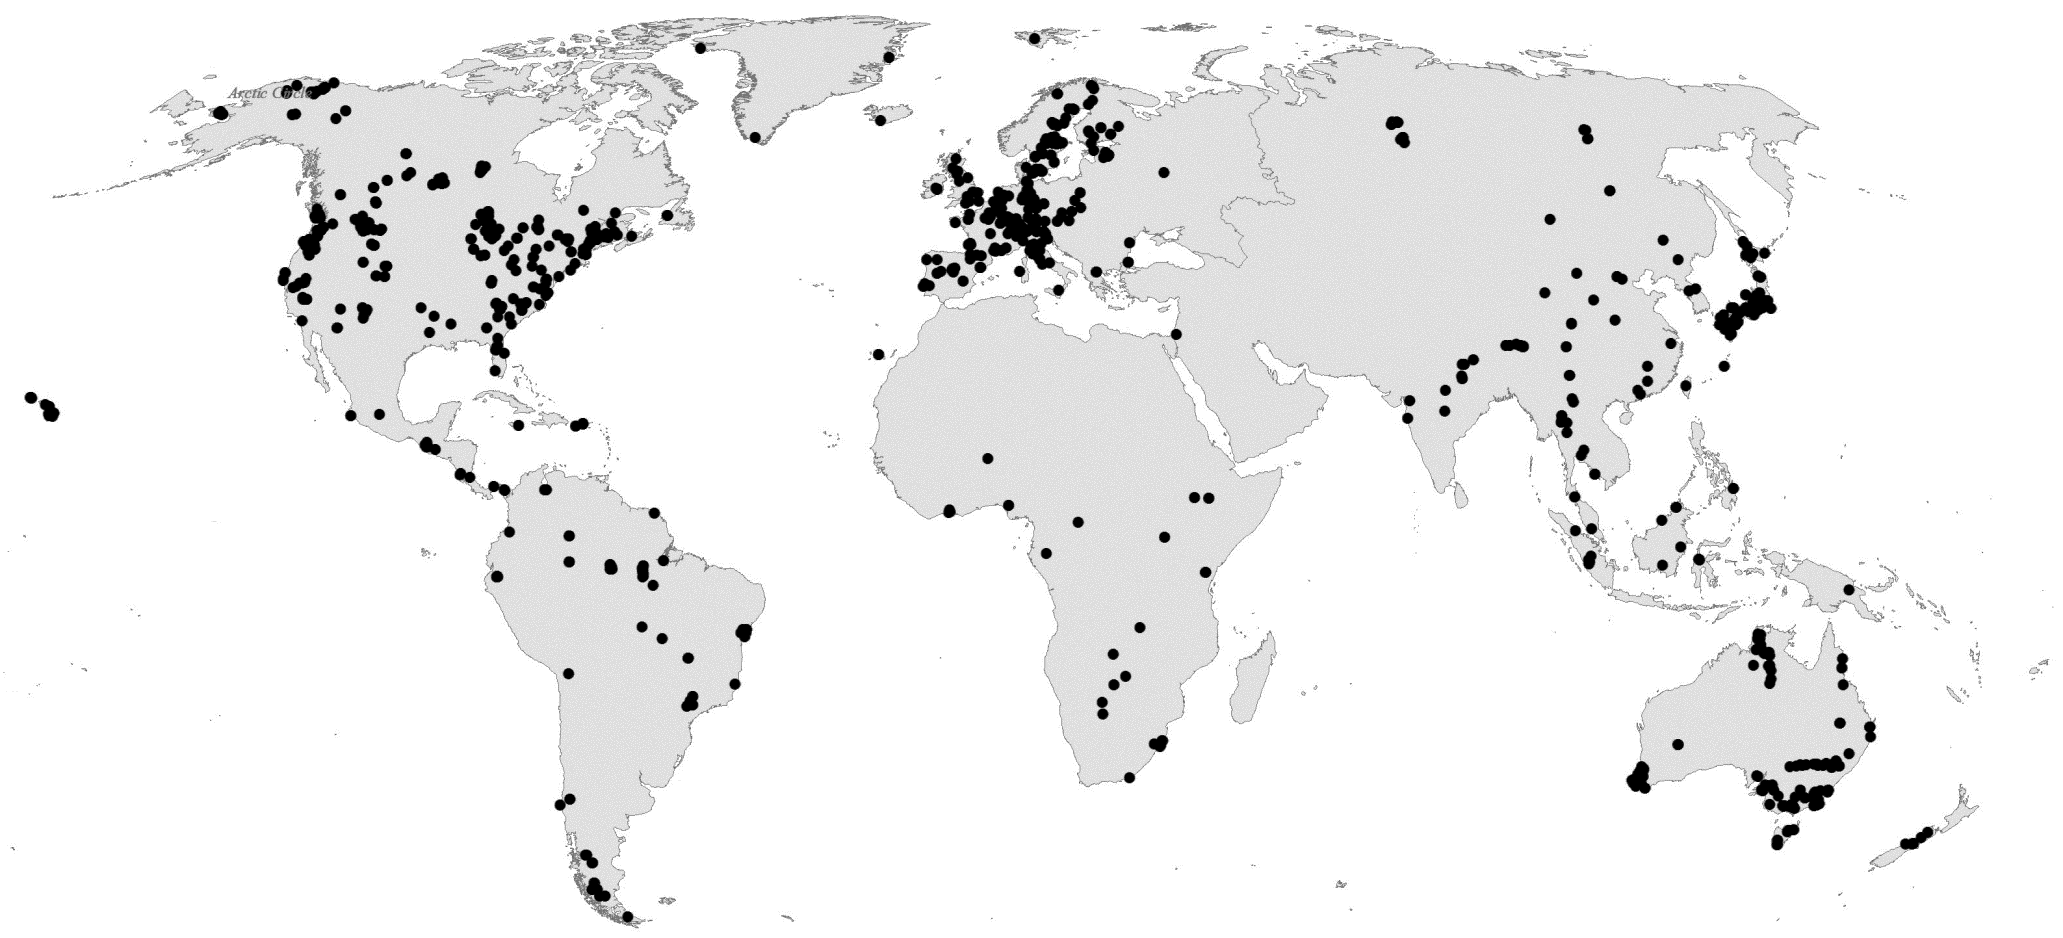 Global map of LAI data plots